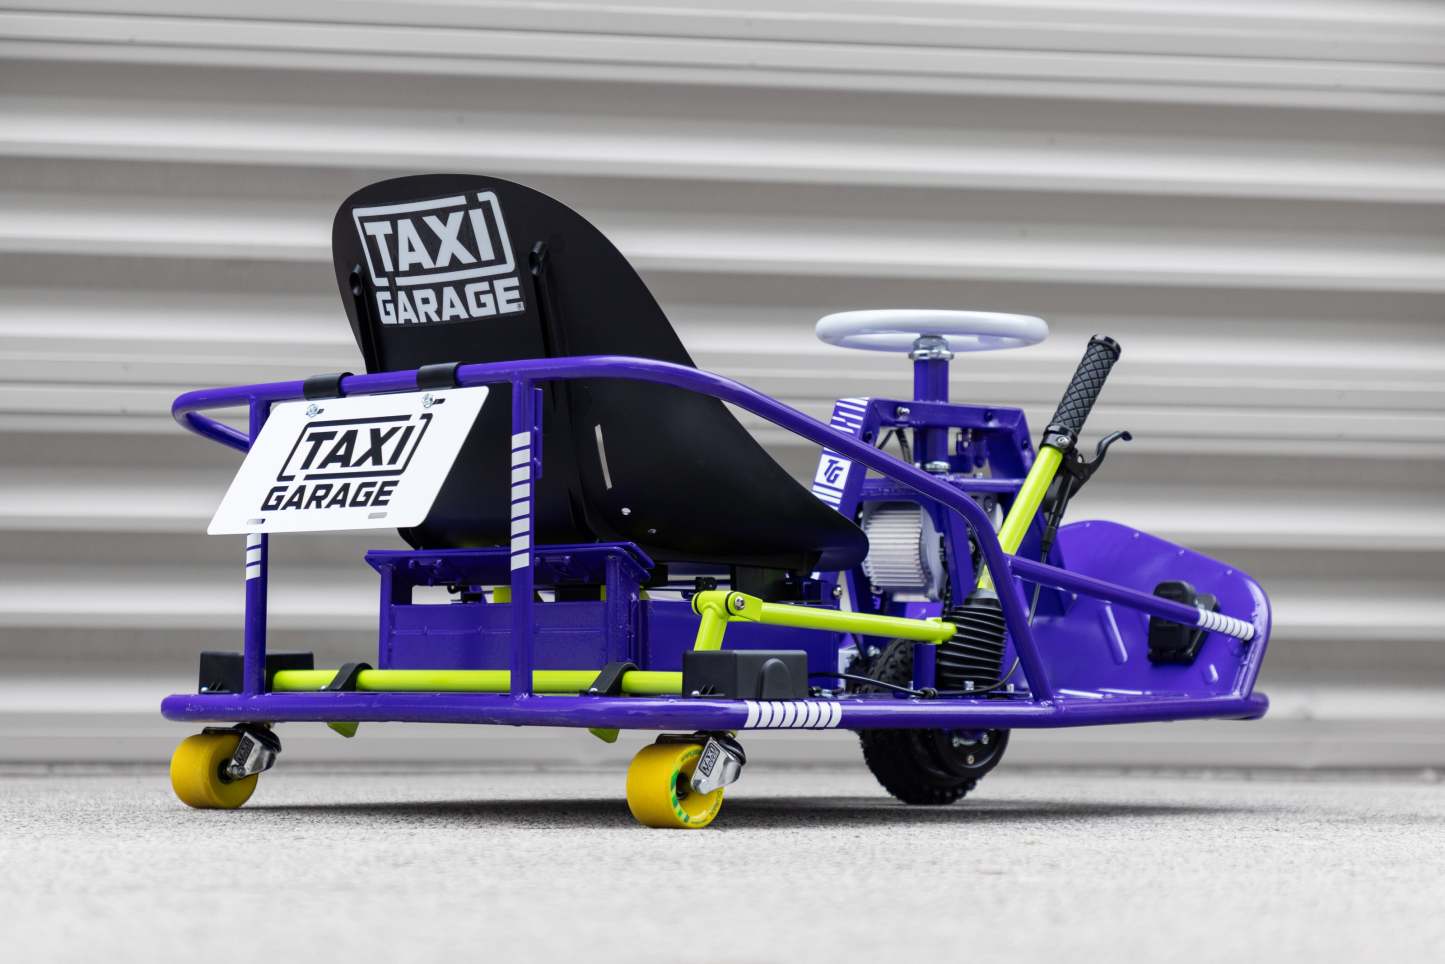 Stage 4 XL Sinbad Purple Taxi Garage Crazy Cart INVENTORY